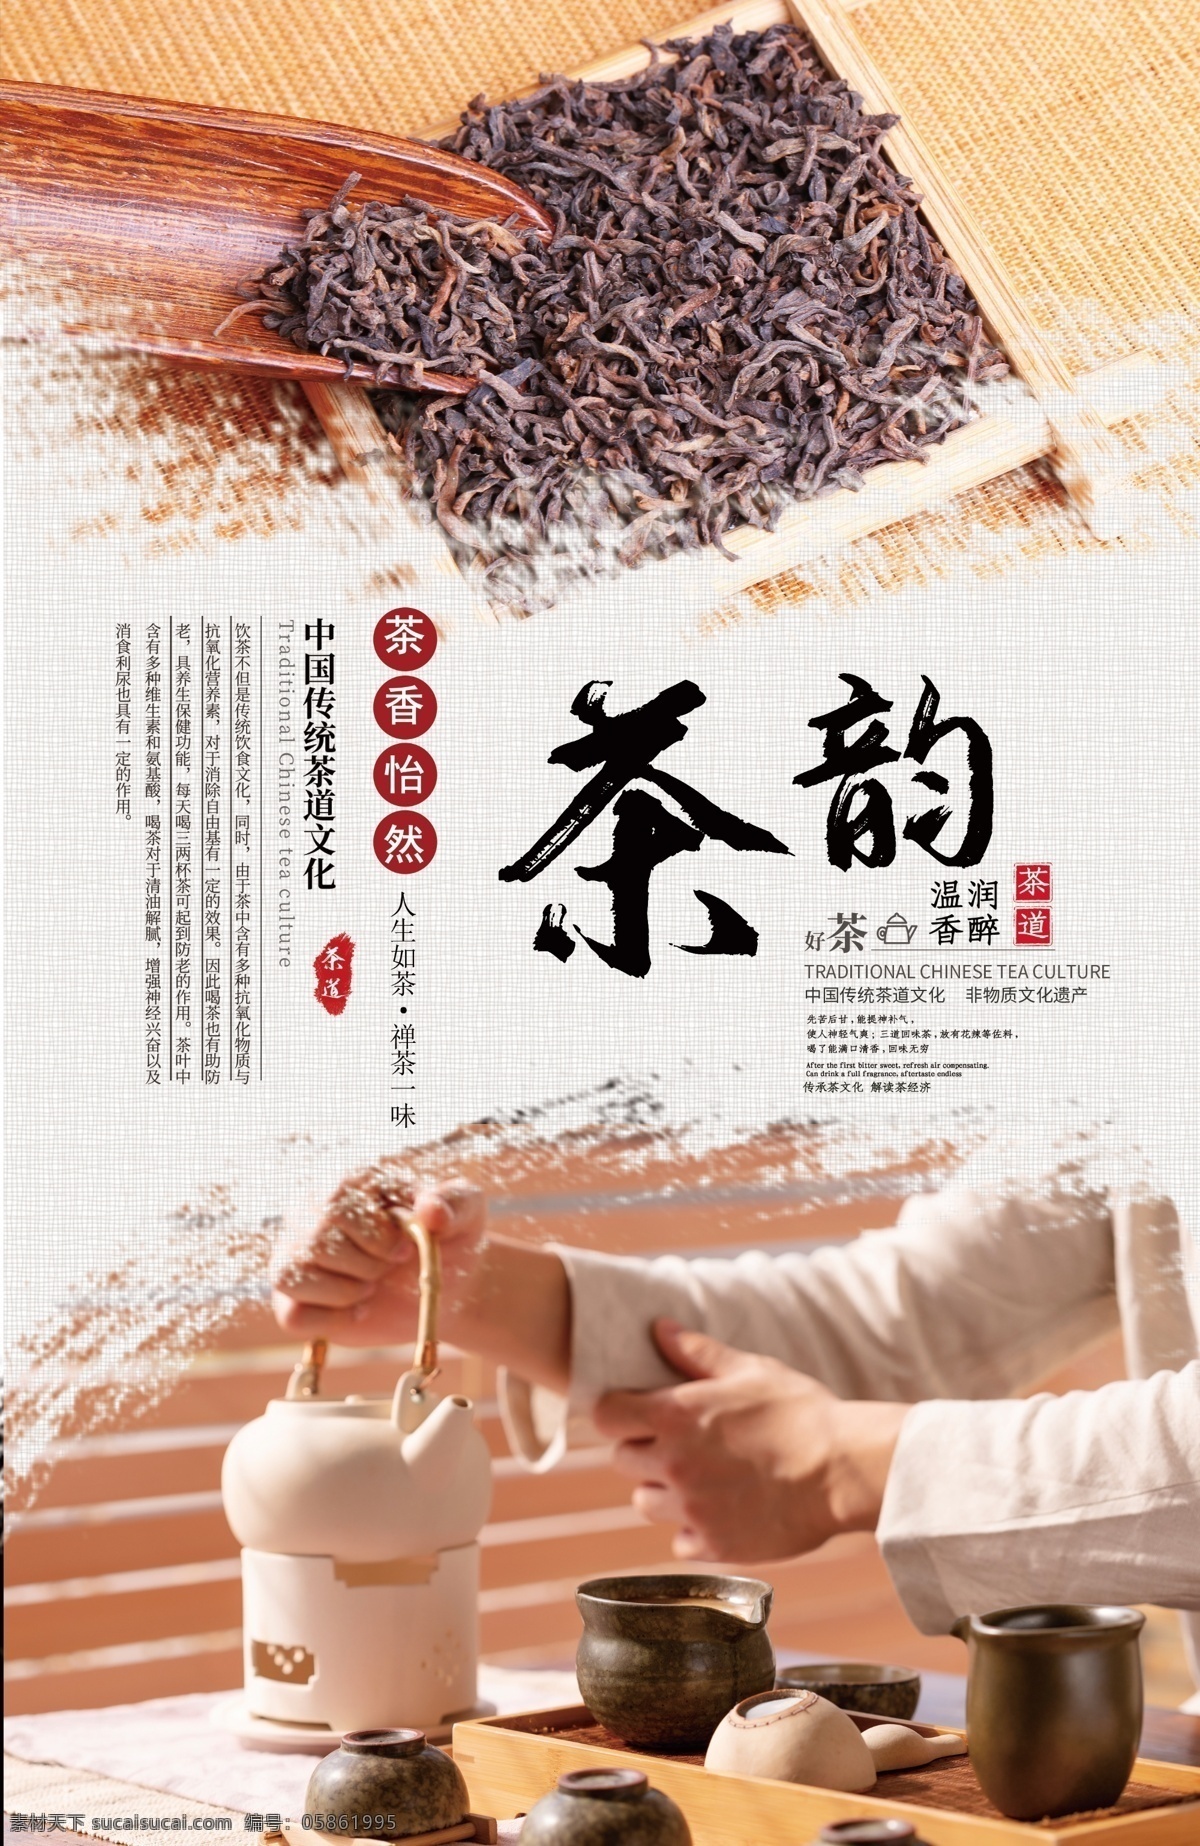 茶 韵 茶文化 海报 茶韵 茶文化海报 中国茶 茶艺 茶道 沏茶 茶叶 红茶 绿茶